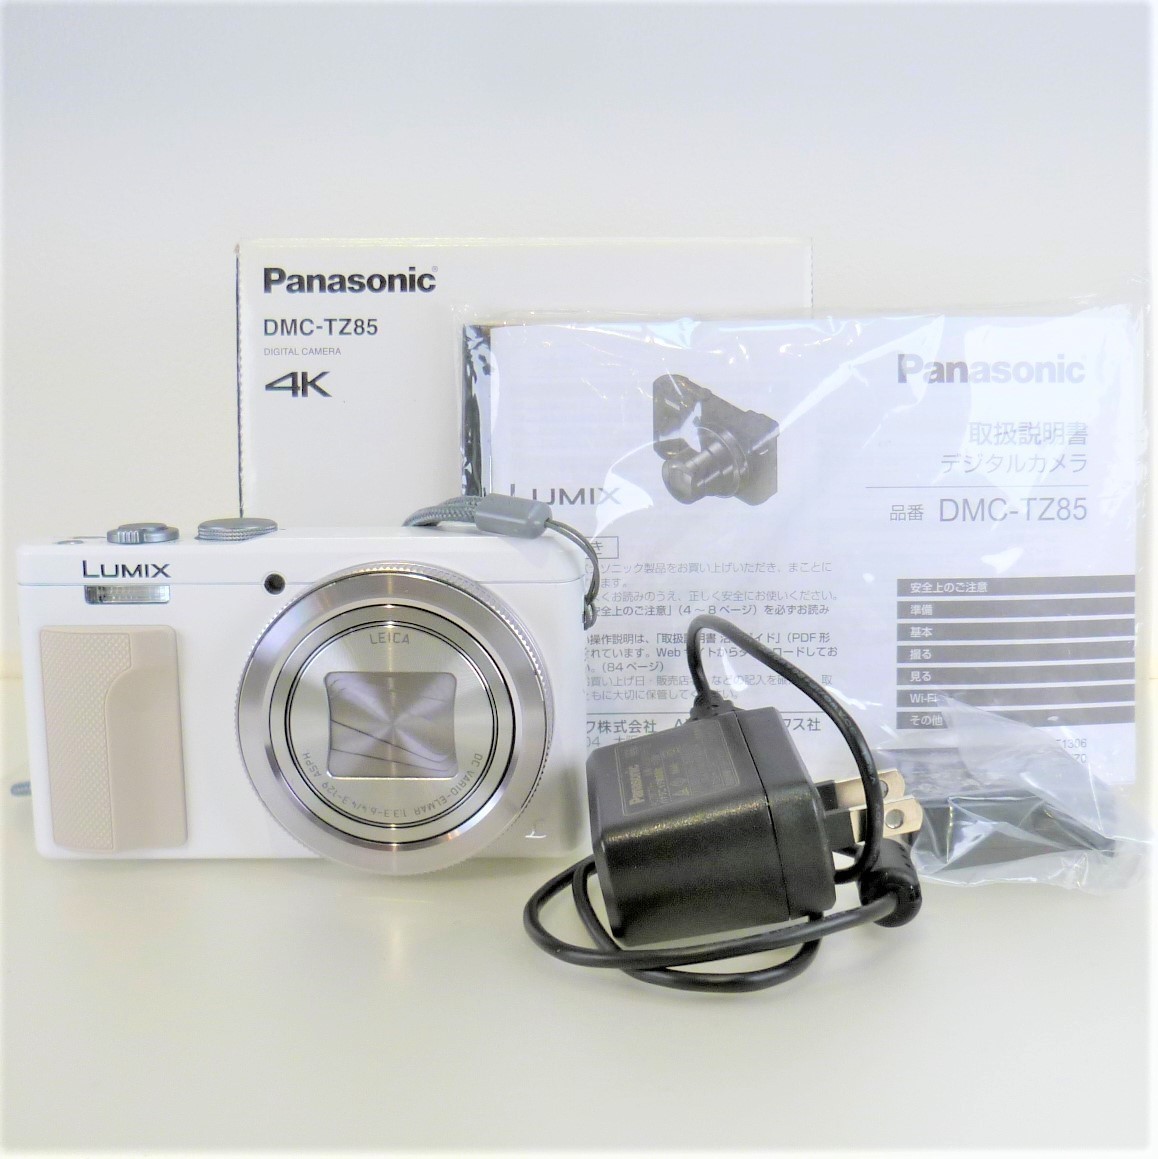 777] Panasonic DMC-TZ85 LUMIX【】デジタルカメラ ホワイト 光学機器